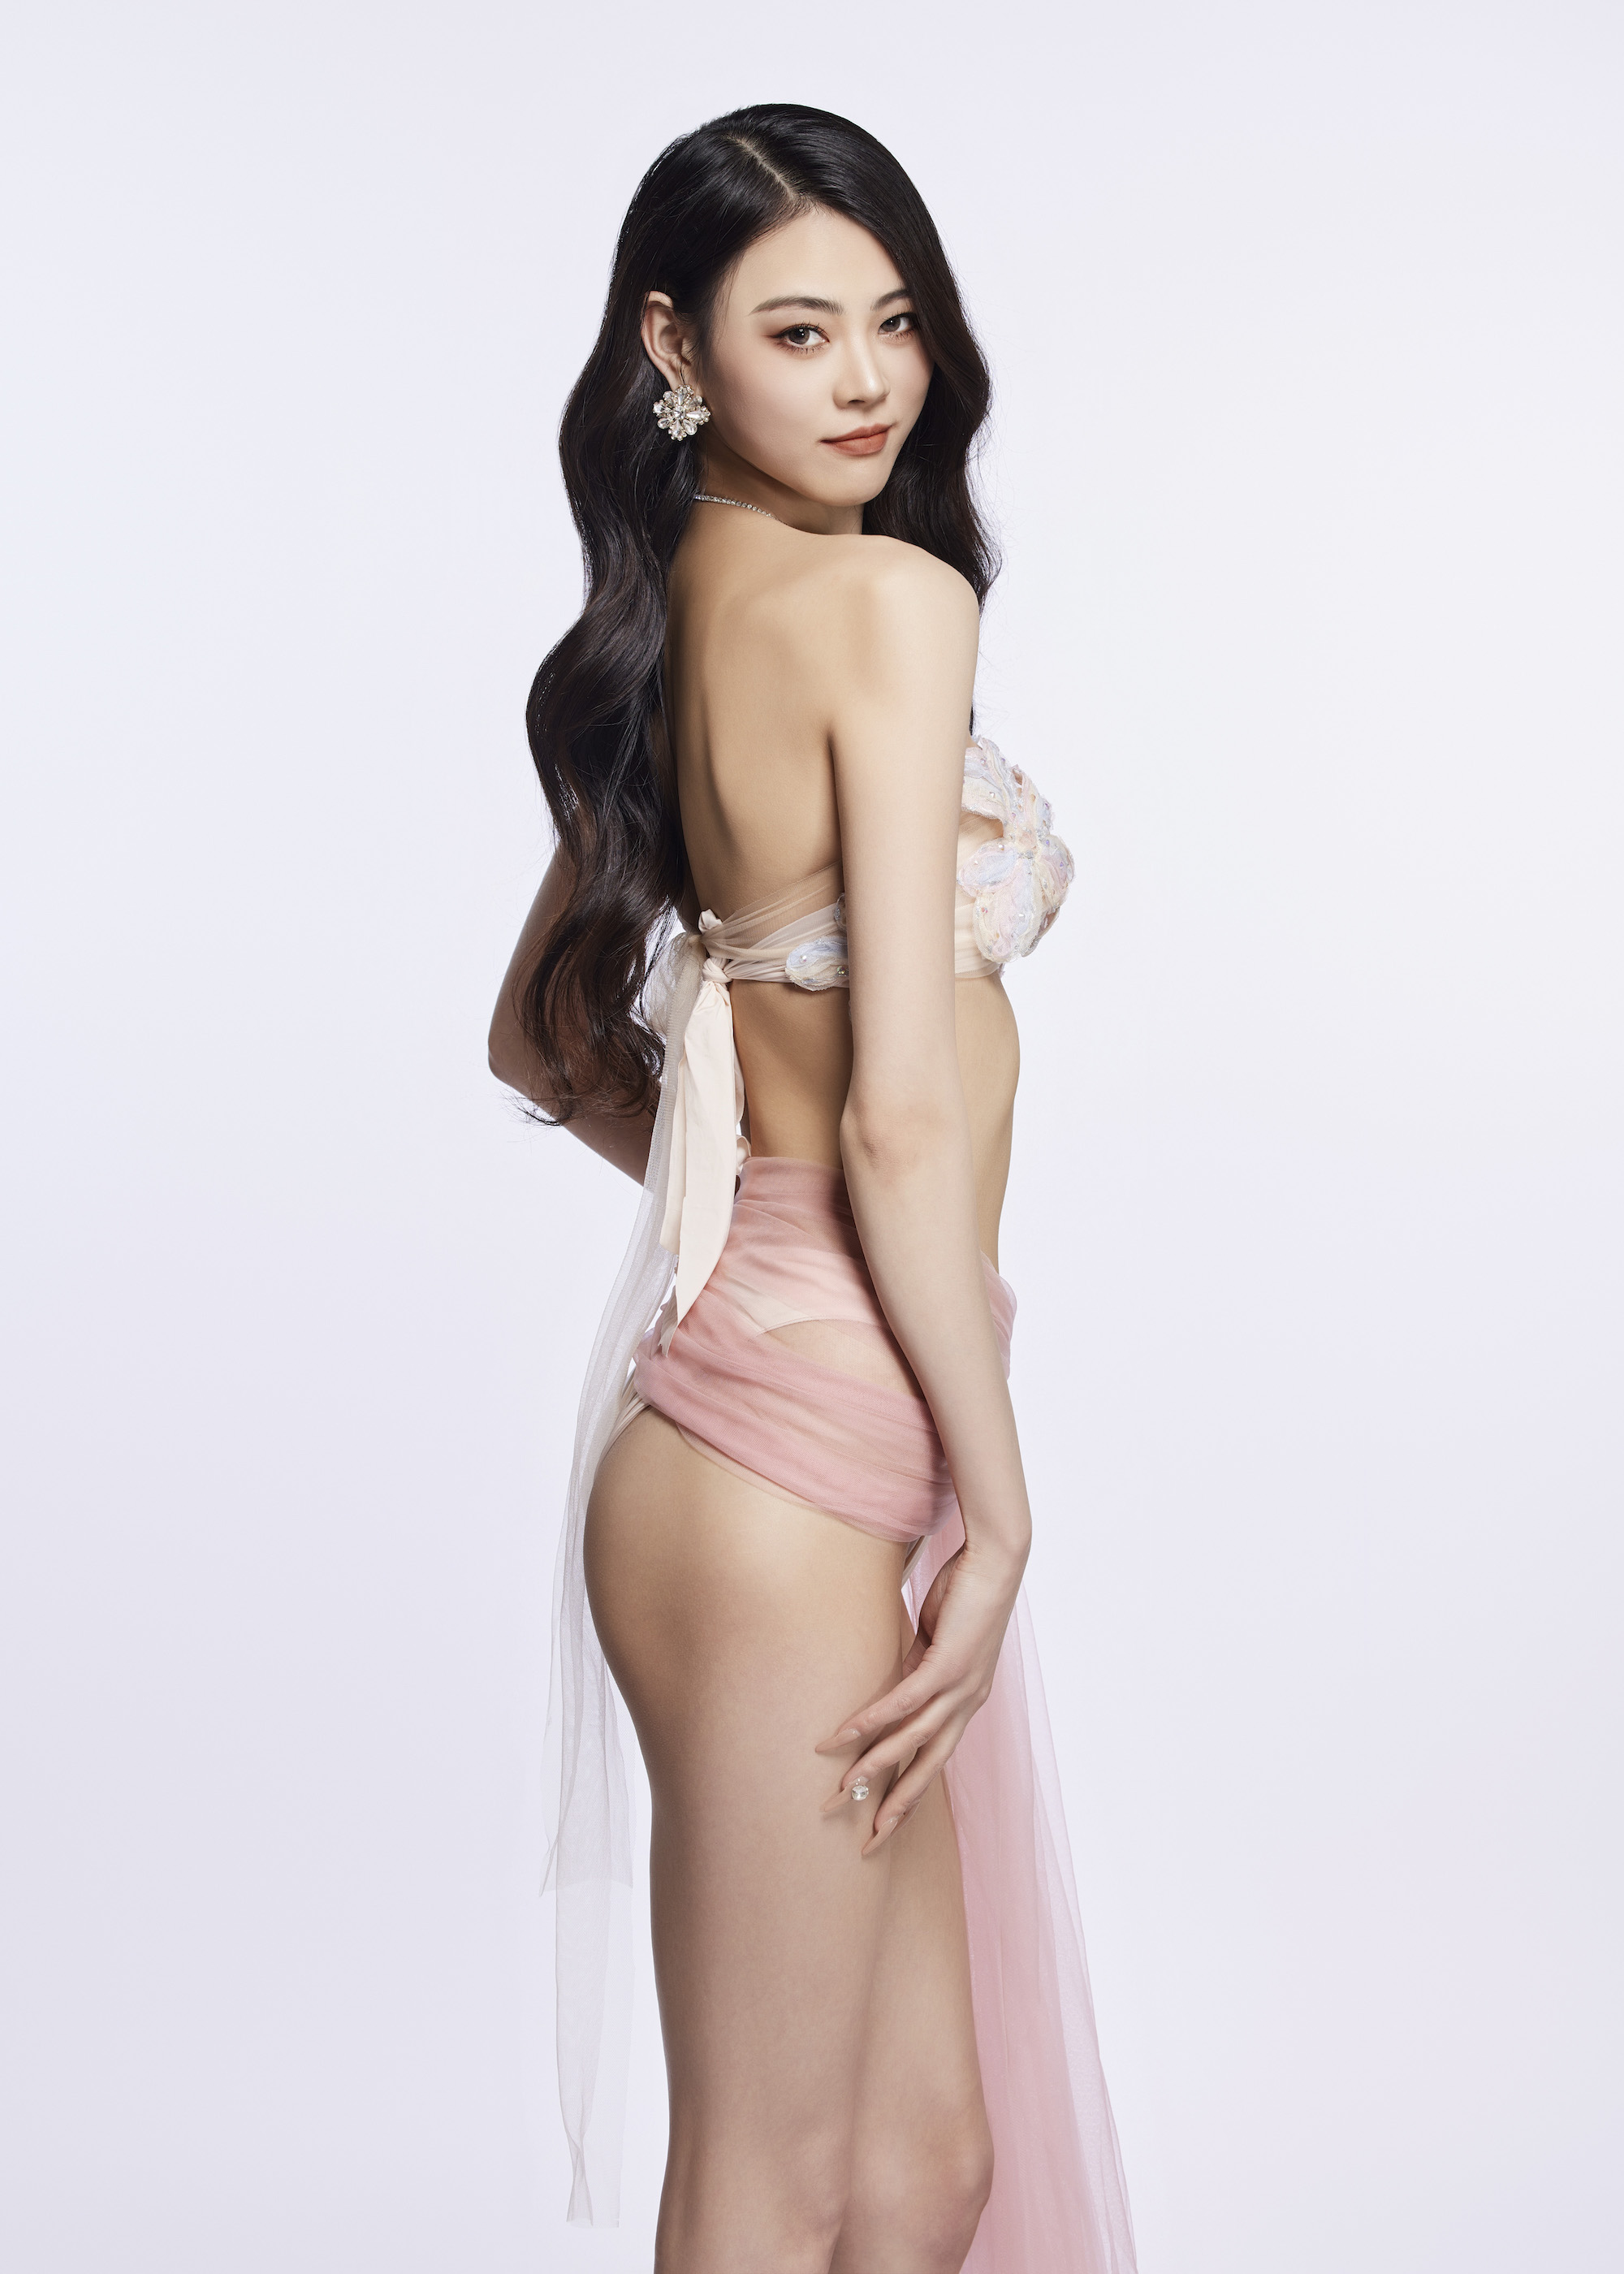 Dàn thí sinh Miss Charm diện bikini khoe body nóng bỏng - Ảnh 3.